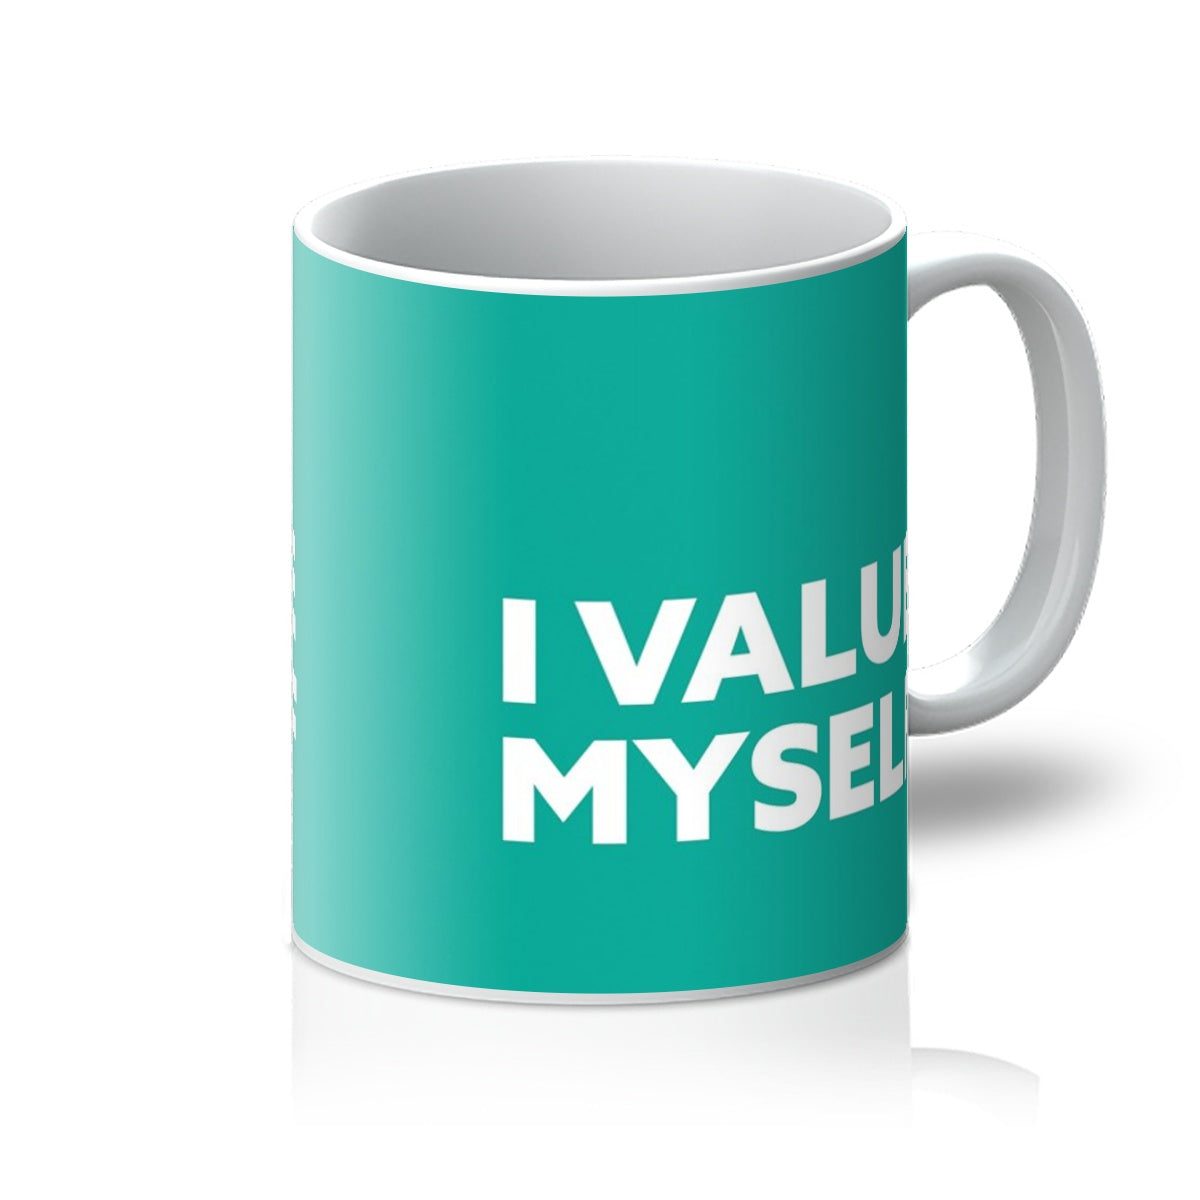 I Value Myself – Teal Mug